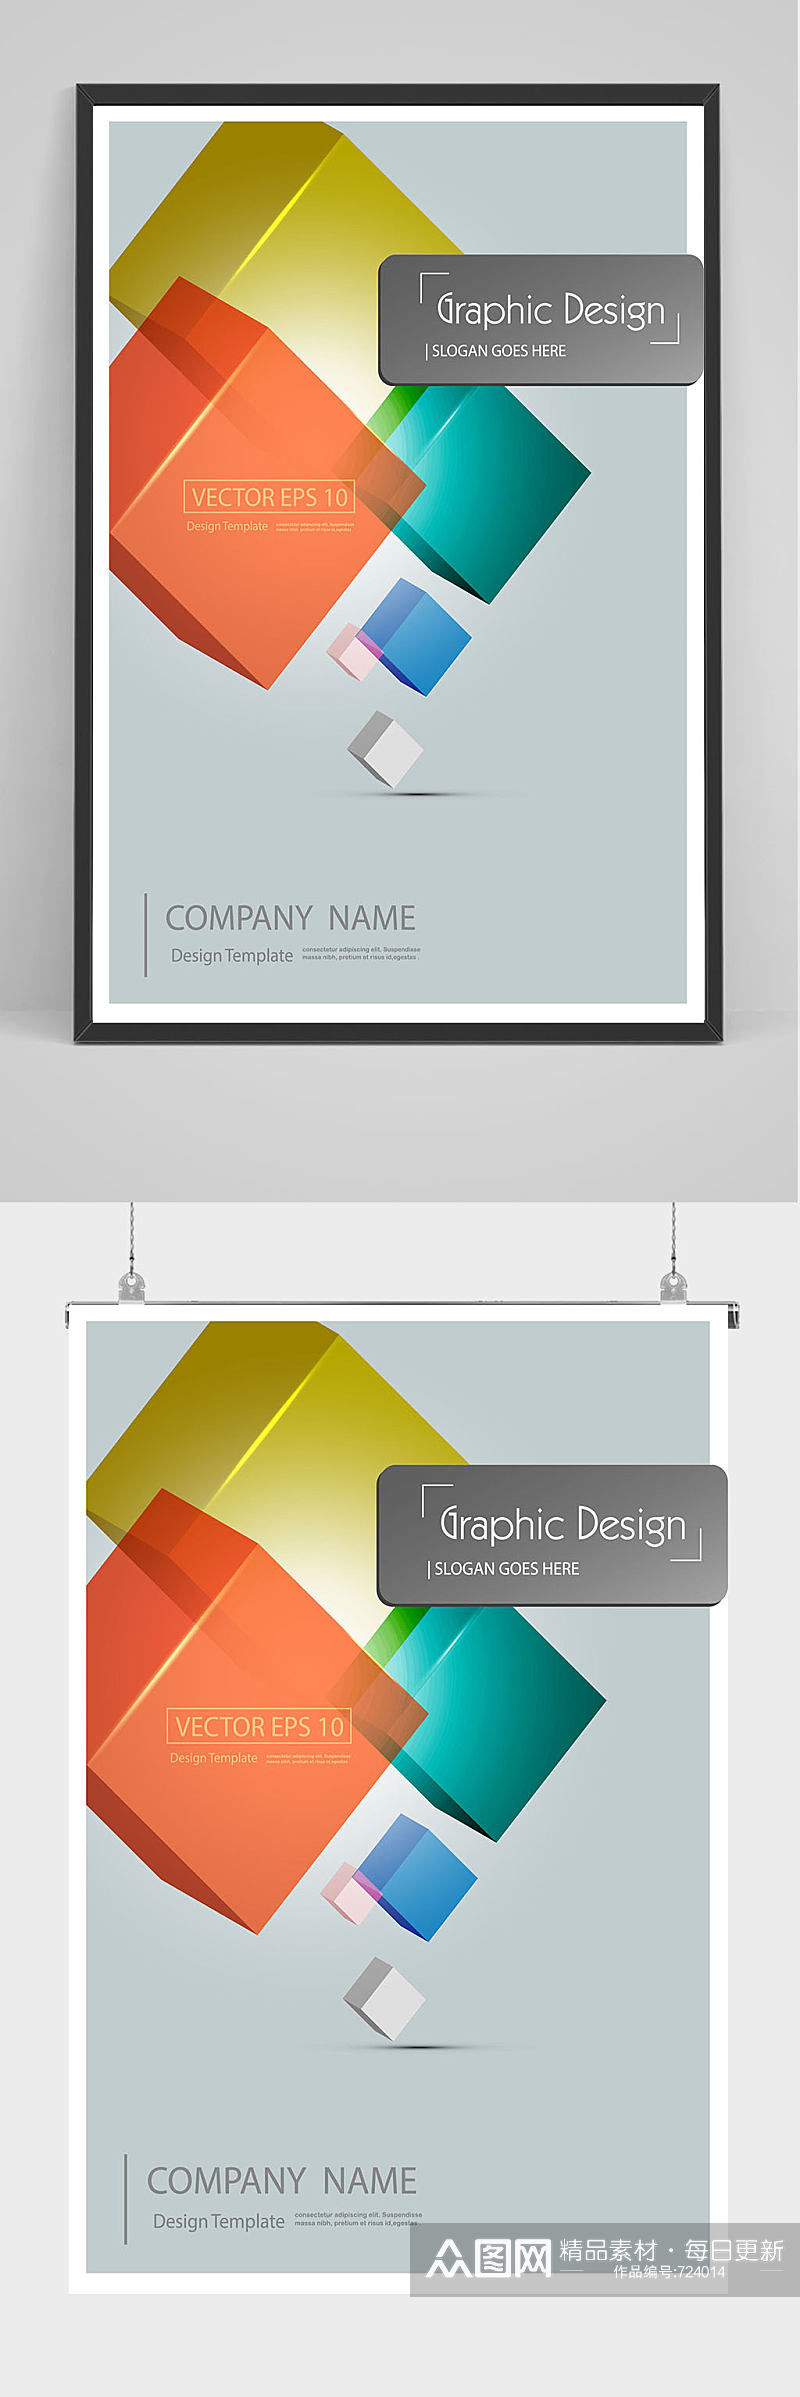 创意几何图形公司海报设计素材